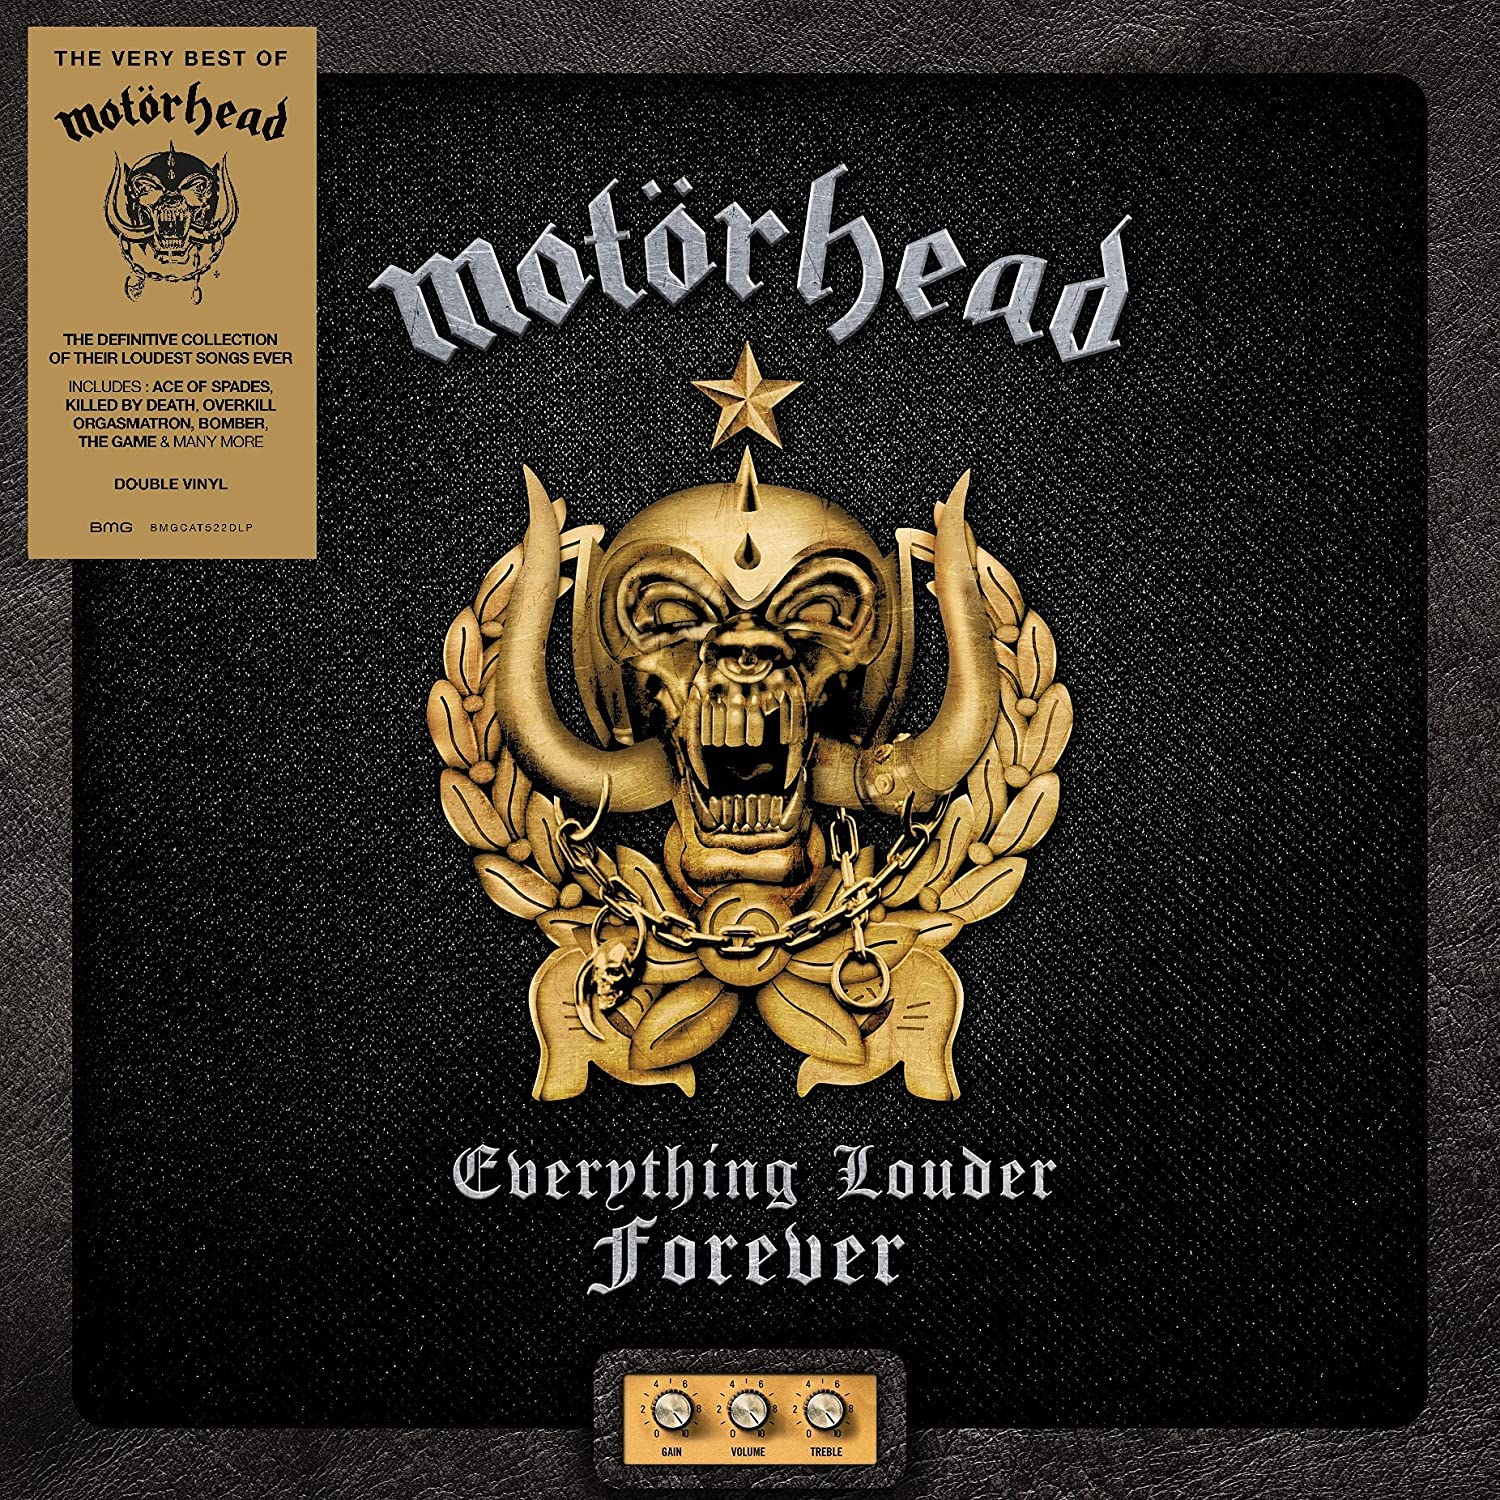 Motörhead - Everything louder forever (Gatefold) - 2 x LP